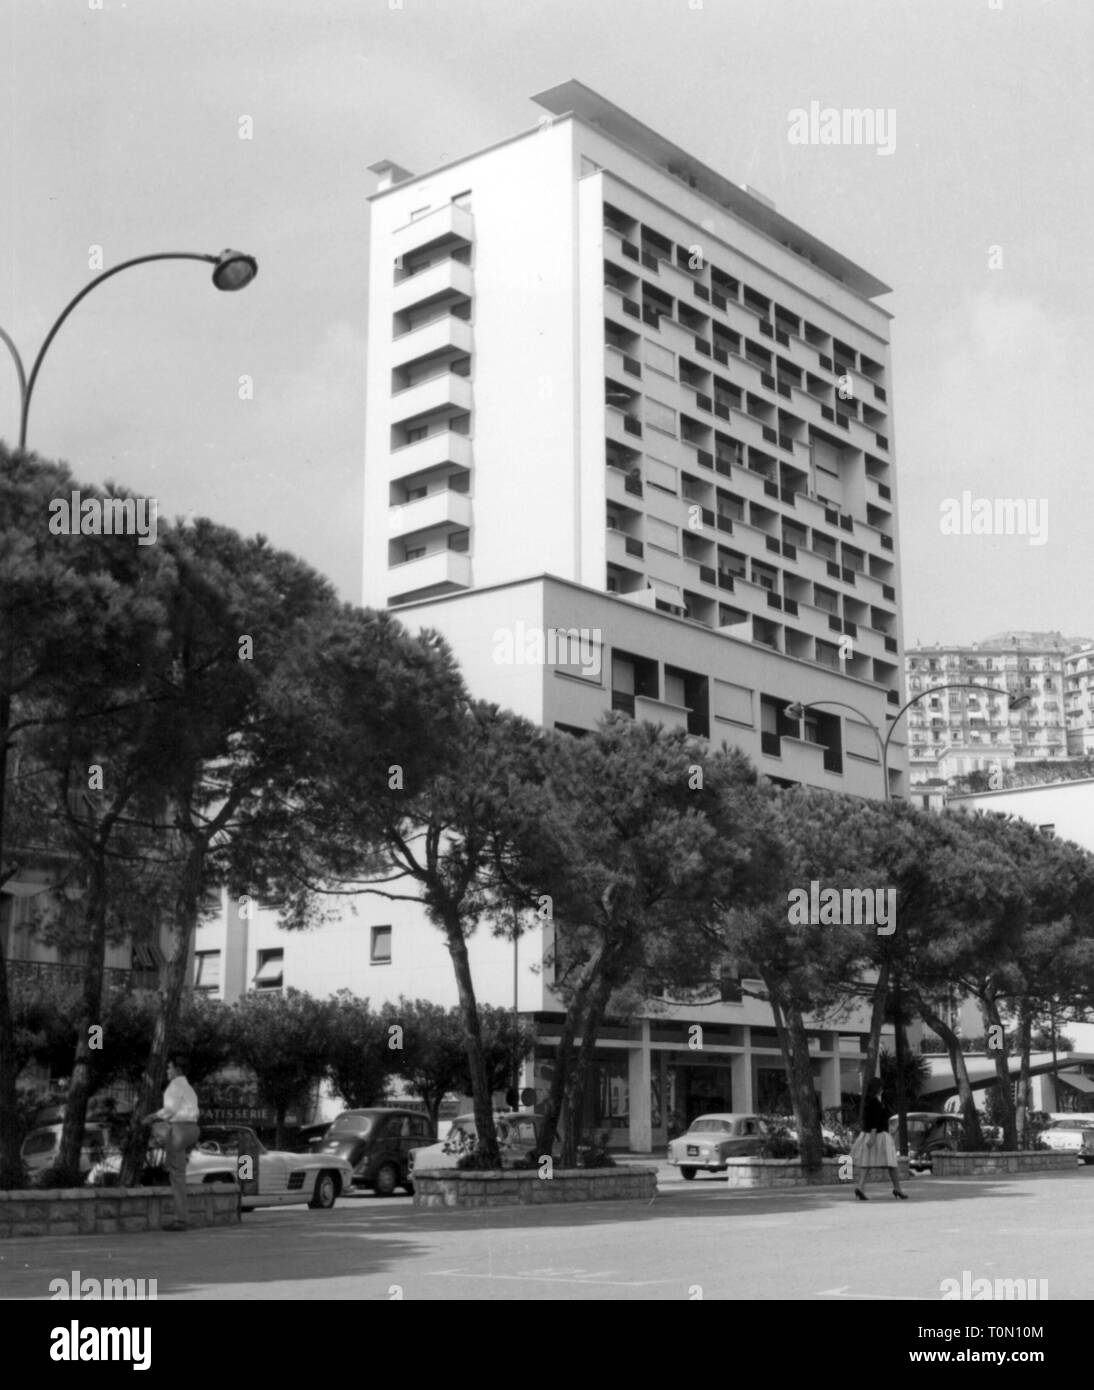 Geografia / viaggi, Monaco, edificio nuovo edificio multi-piano di Boulevard Albert I, vista esterna, 1960, Additional-Rights-Clearance-Info-Not-Available Foto Stock